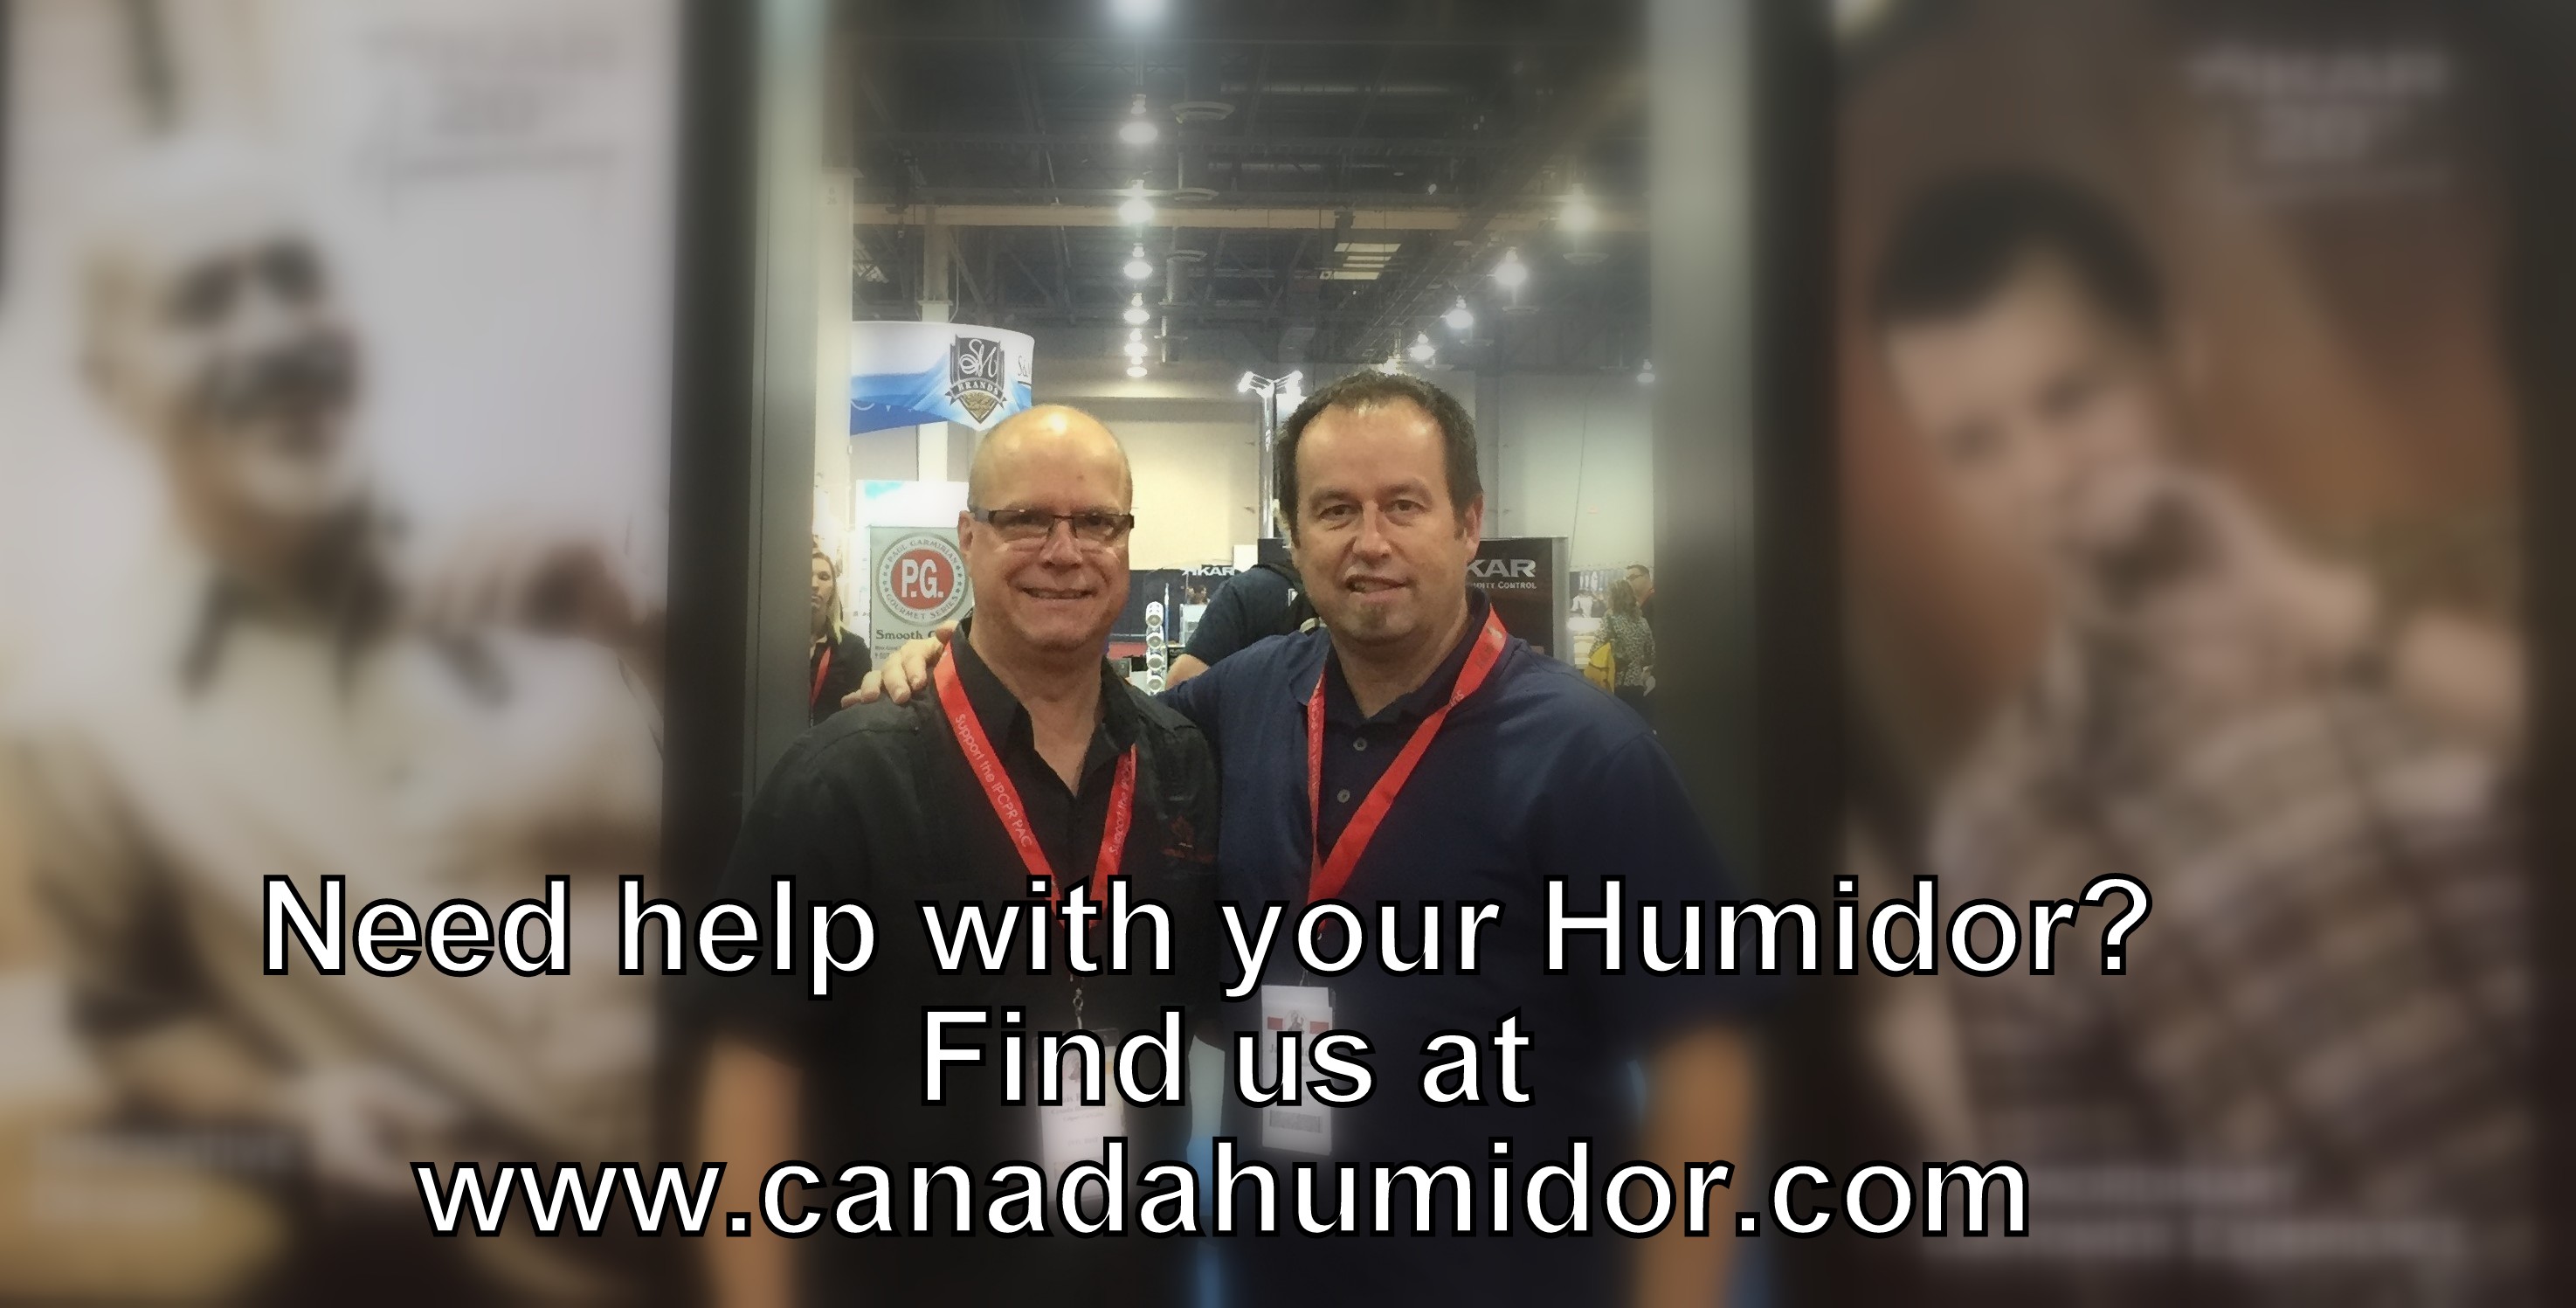 Canada Humidor Team